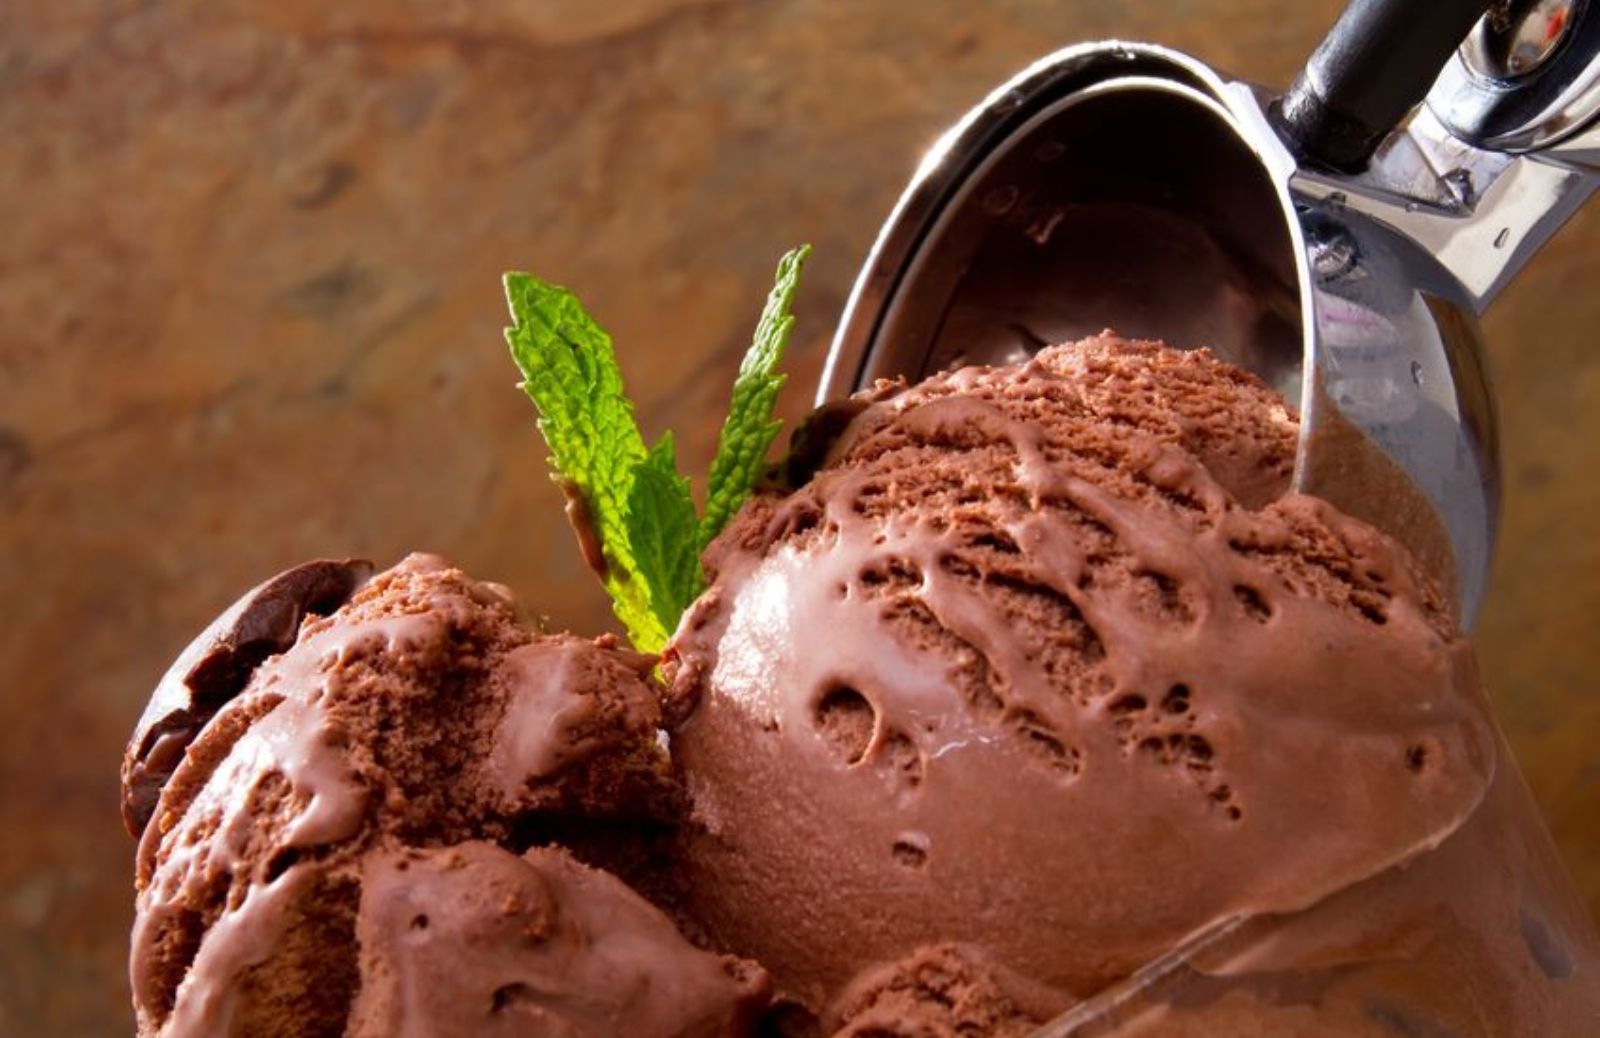 La ricetta del gelato al cioccolato da preparare con il Bimby